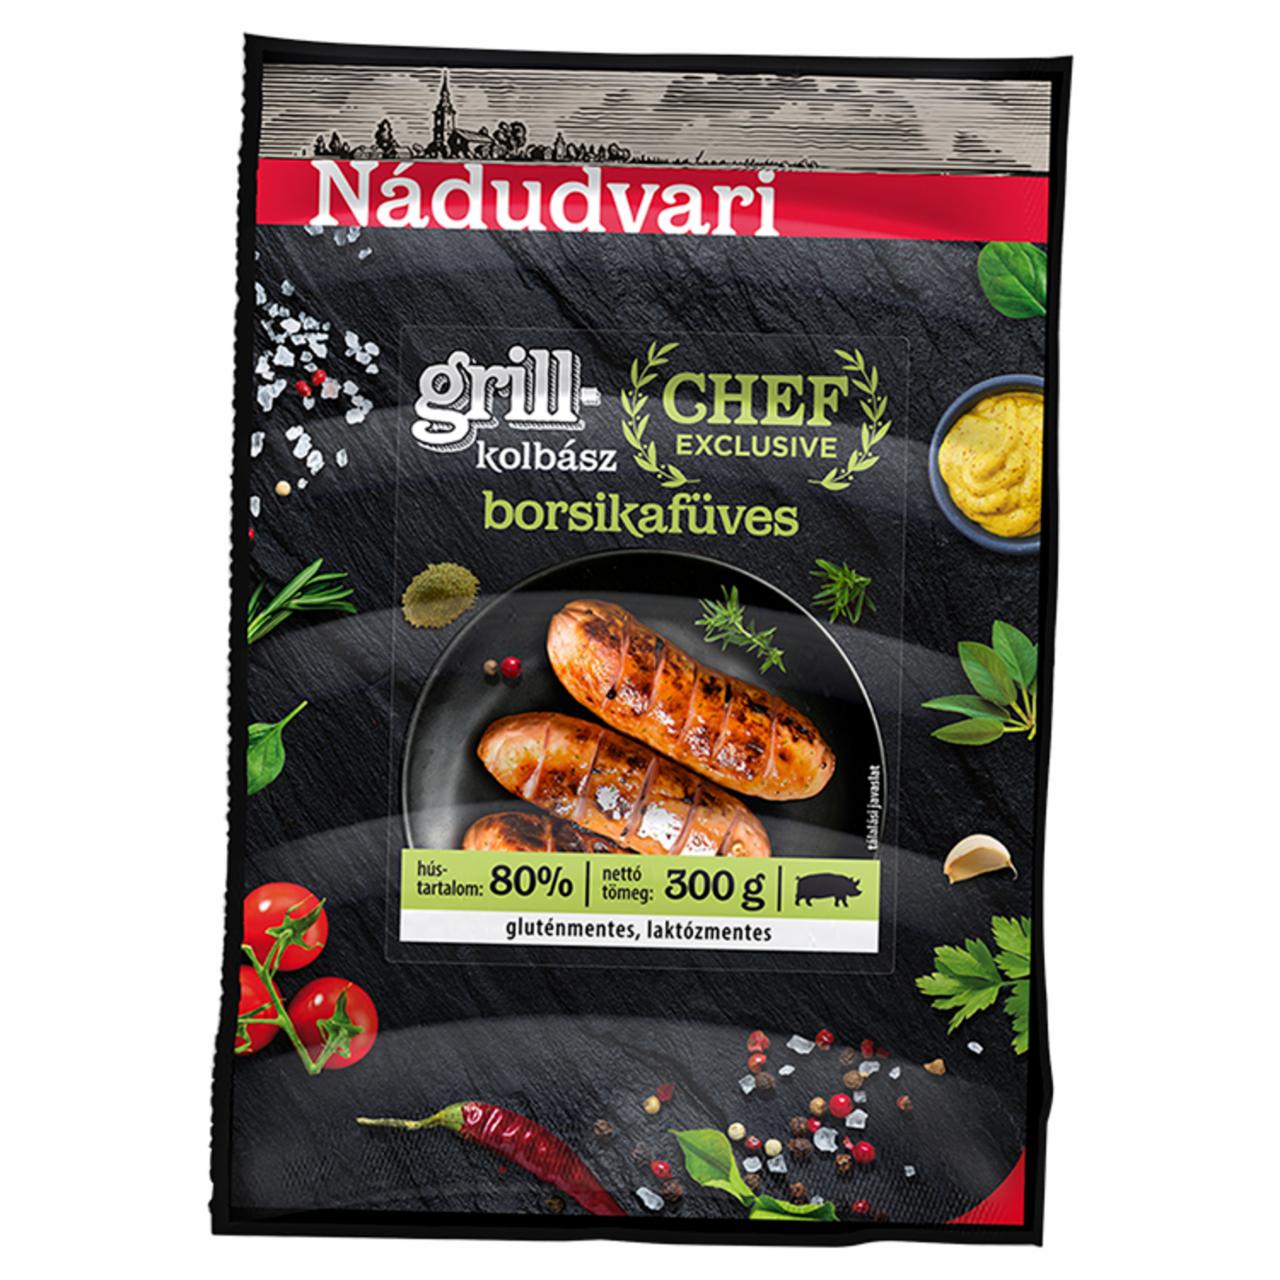 Képek - Nádudvari Chef Exclusive borsikafüves sertés grillkolbász 300 g